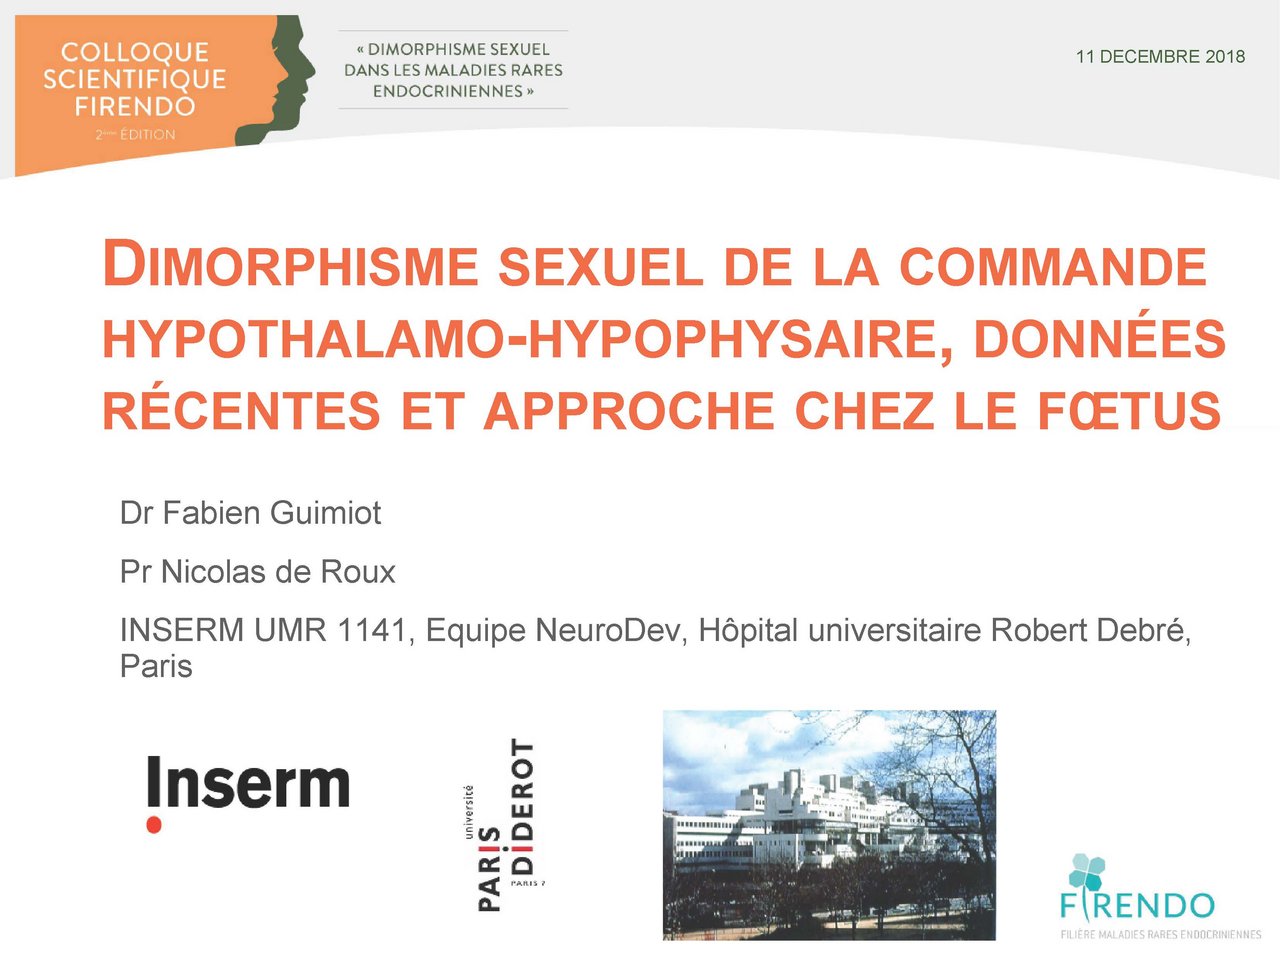 Visuel pour Fabien Guimiot "Dimorphisme sexuel de la commande hypothalamo-hypophysaire, données récentes et approche chez le foetus" 